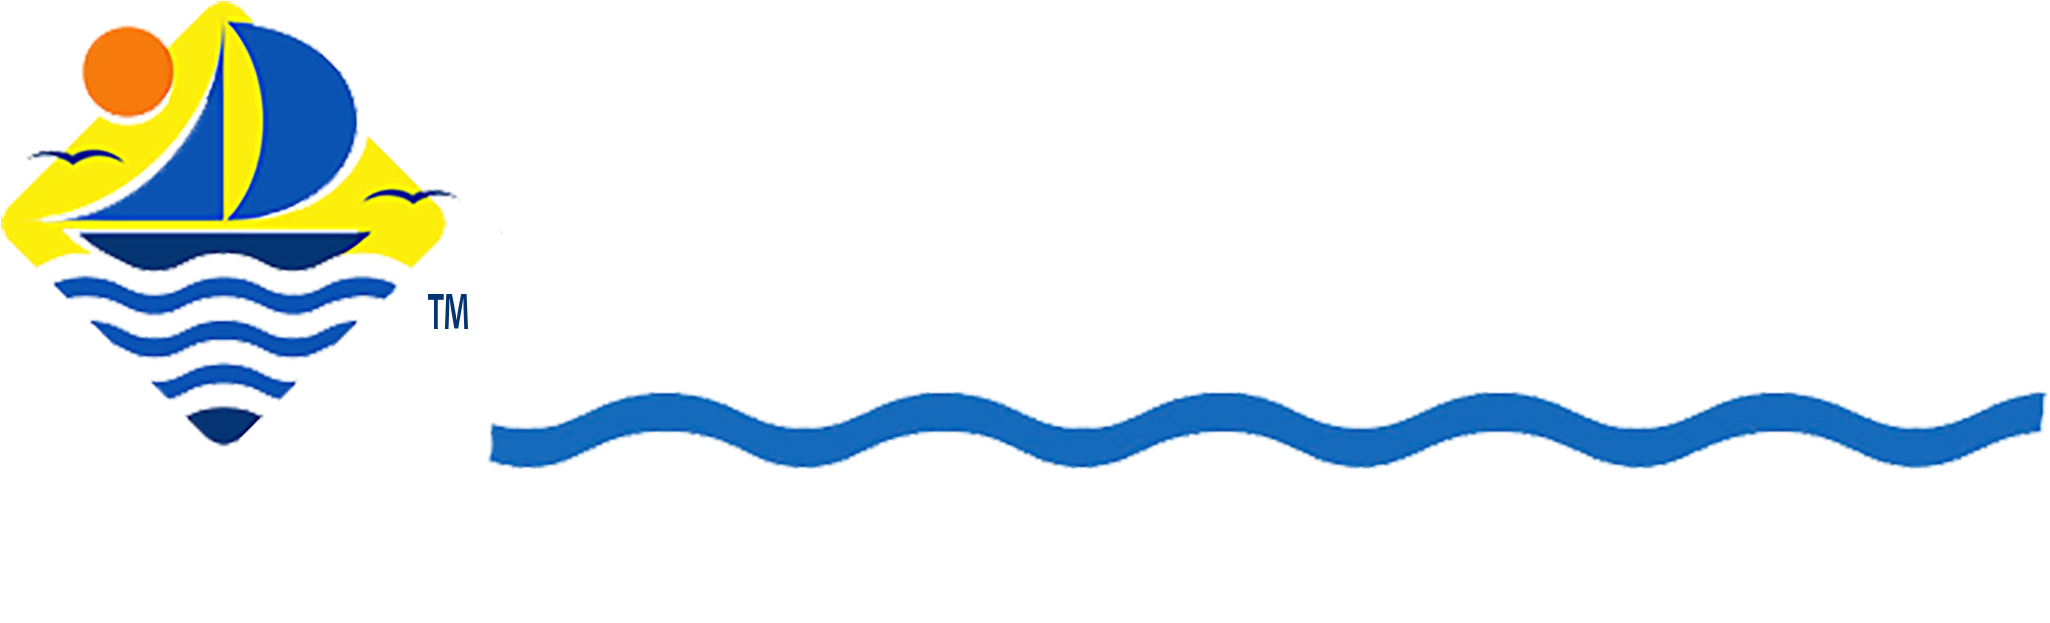 Coastal Windows & Doors - Coastal Windows & Doors (2388x894)